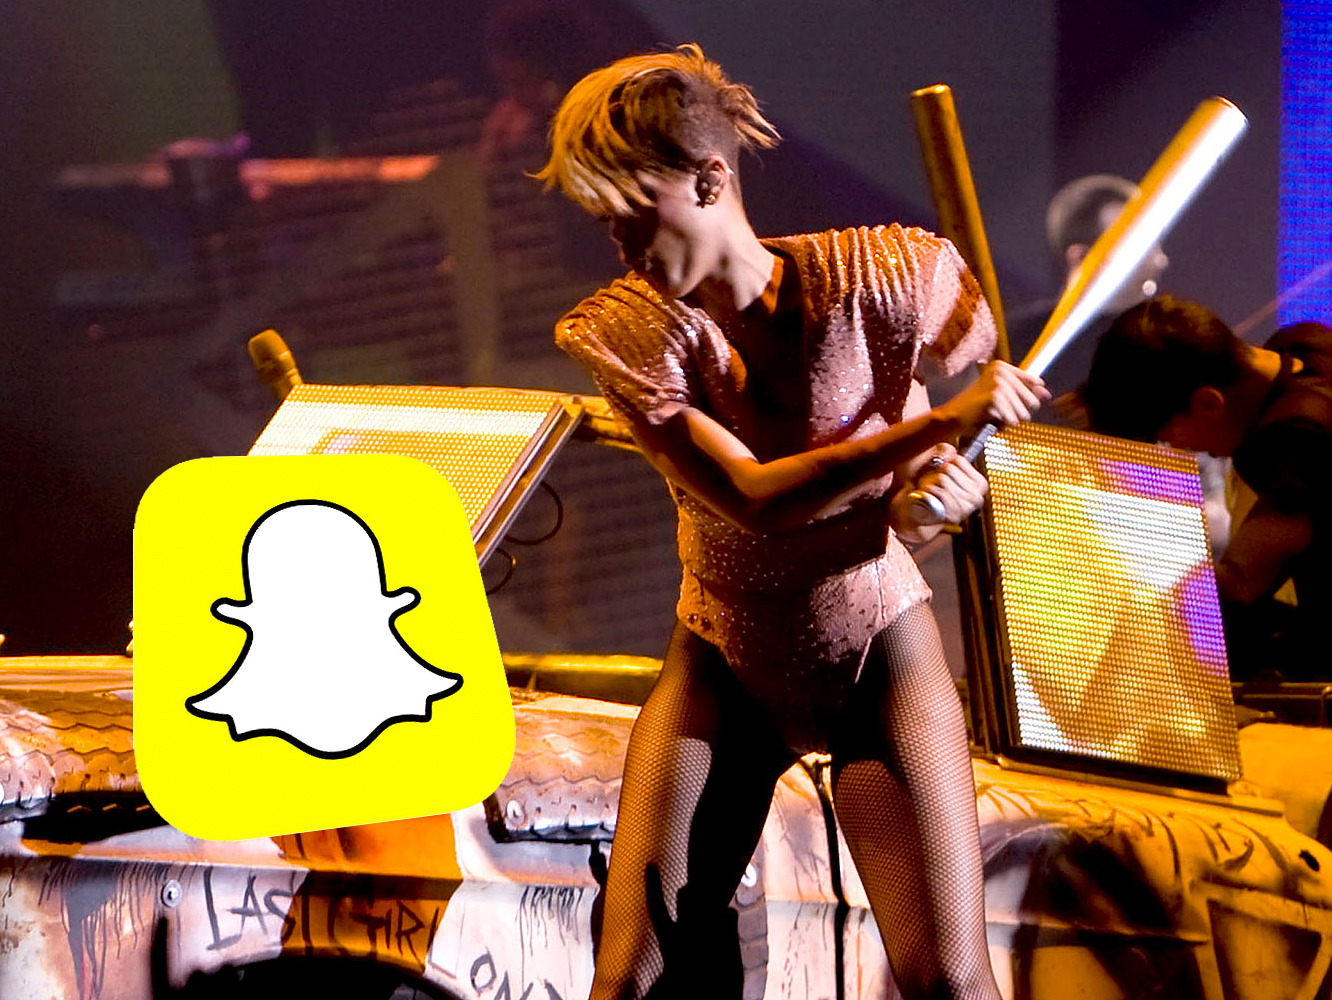  Snapchat publica una justificación de mierda para su polémico anuncio con Rihanna & Chris Brown